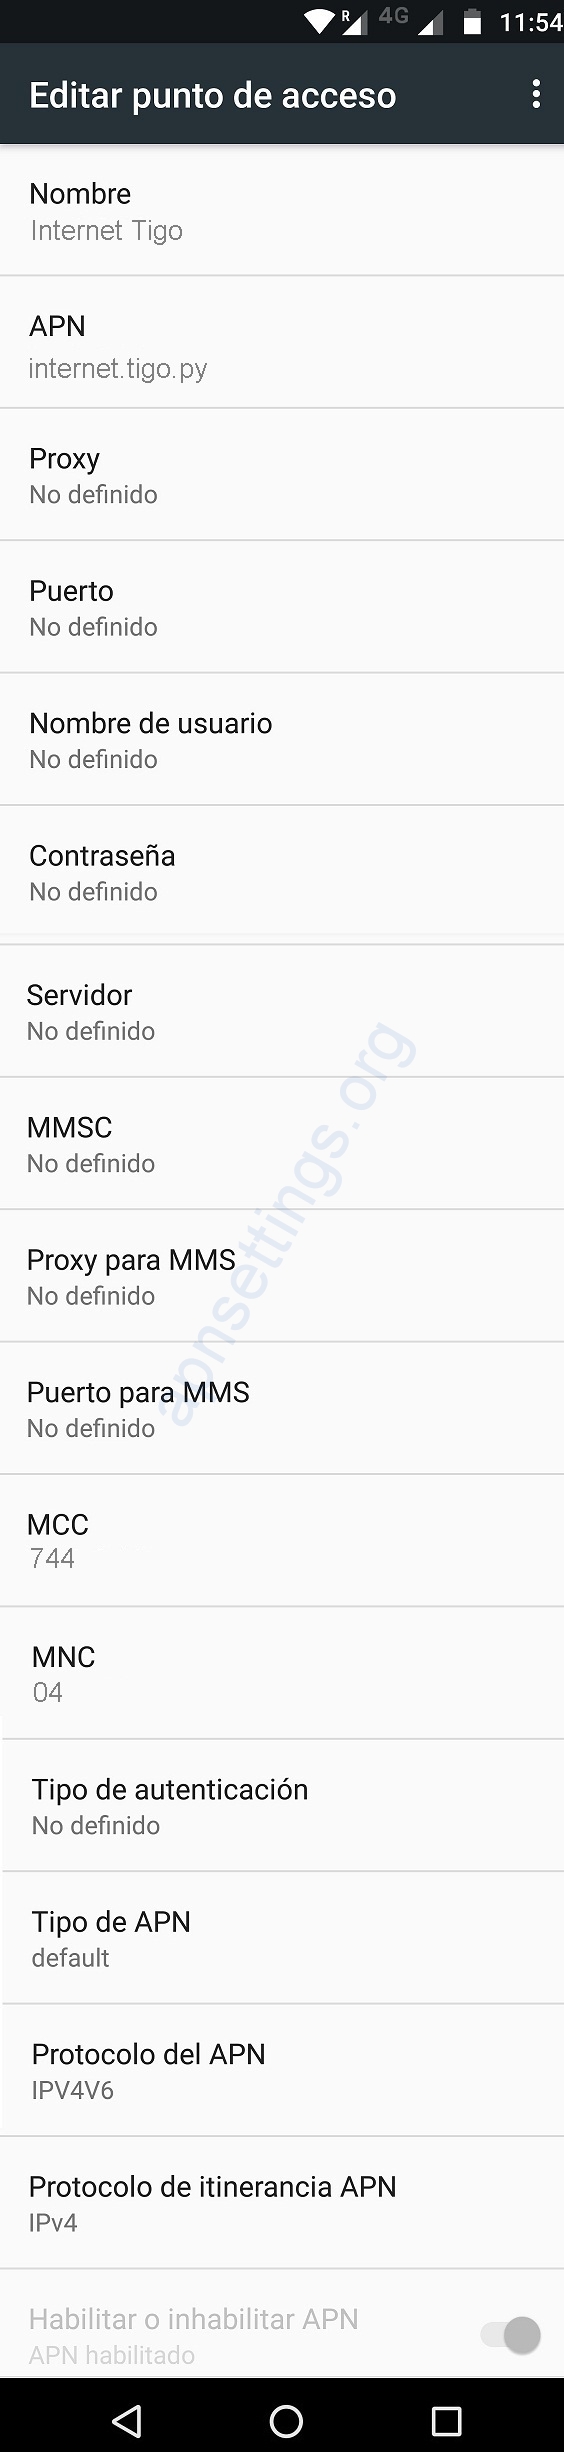 Configuración de Internet Tigo Paraguay 4G LTE para Android